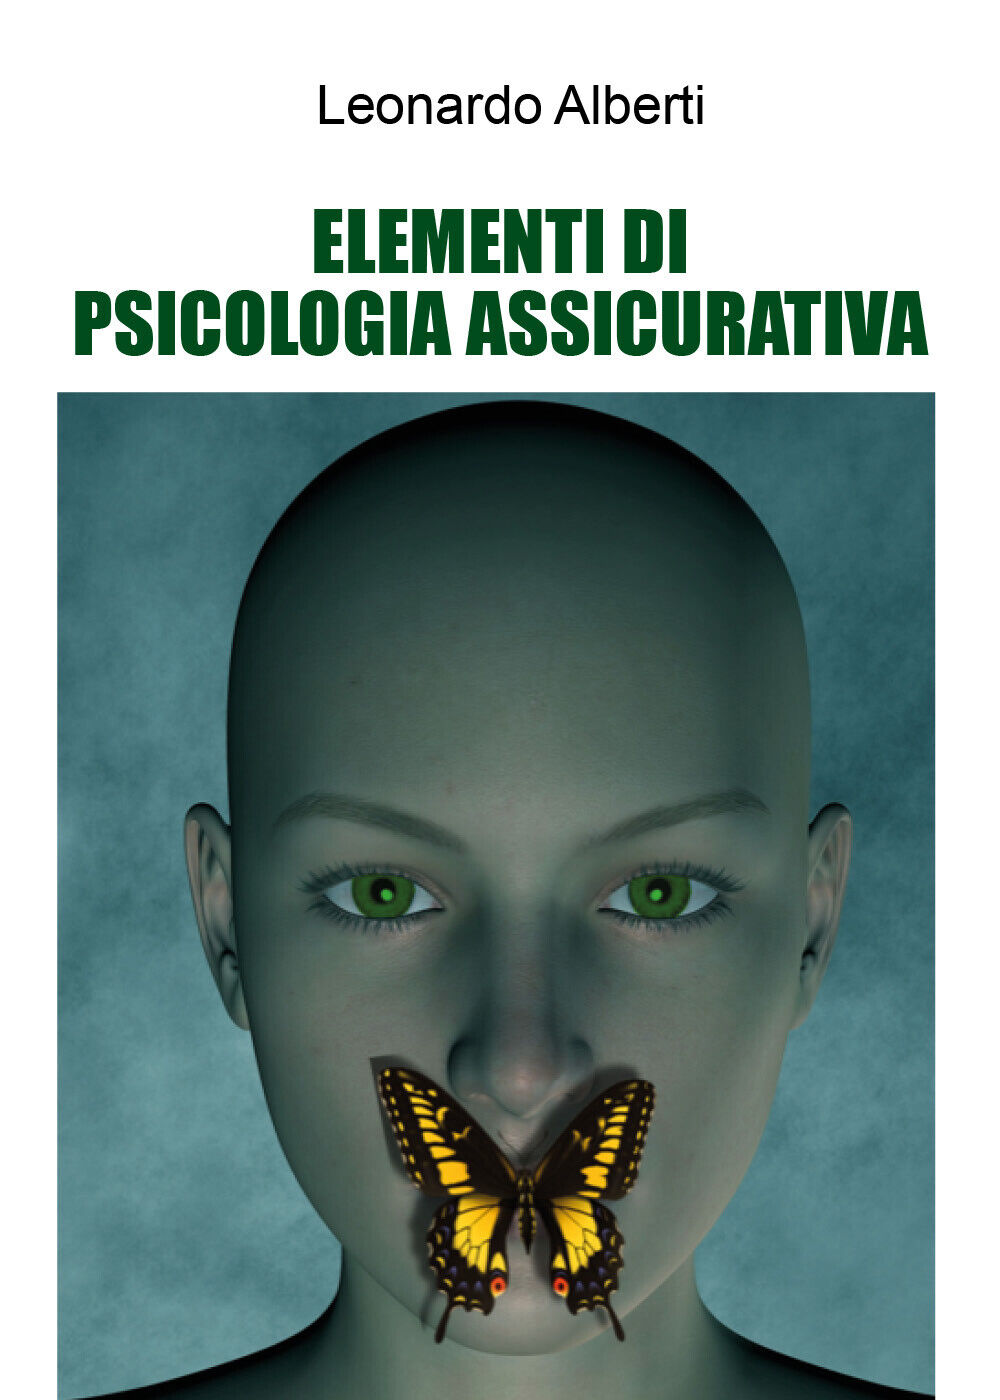 Elementi di psicologia assicurativa di Leonardo Alberti,  2021,  Youcanprint